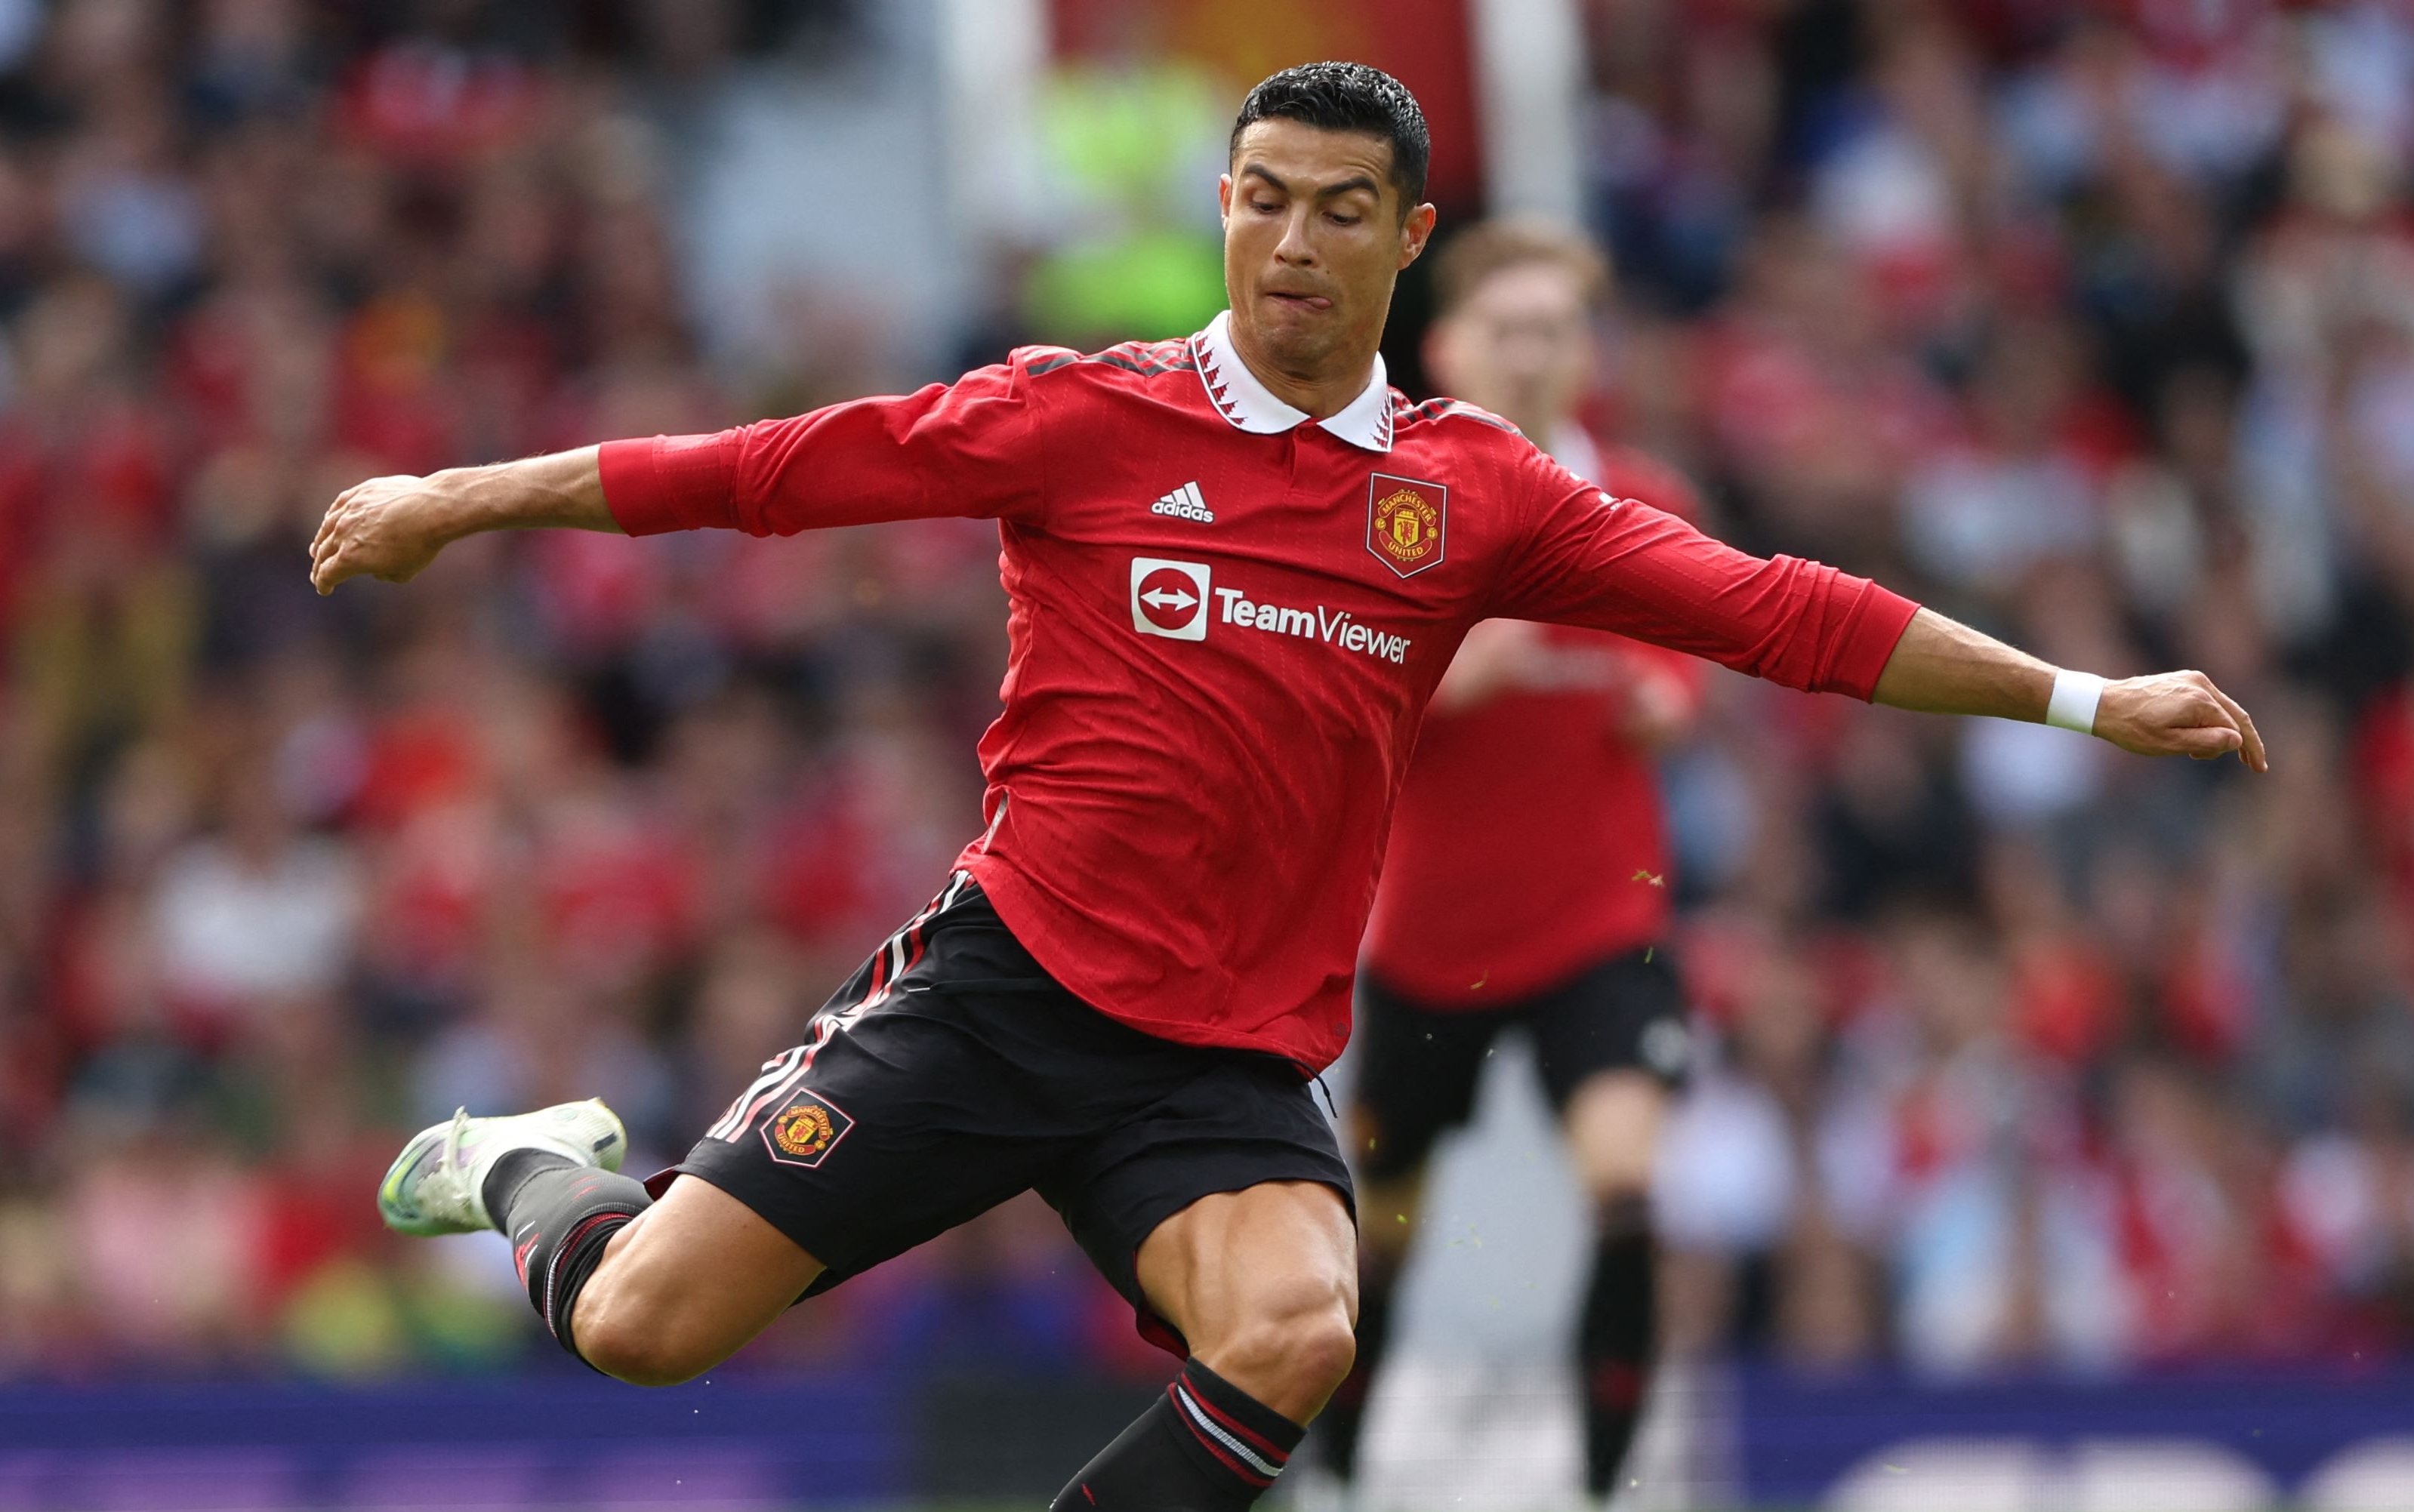 El delantero del Manchester United, Cristiano Ronaldo. (Foto Prensa Libre: AFP)